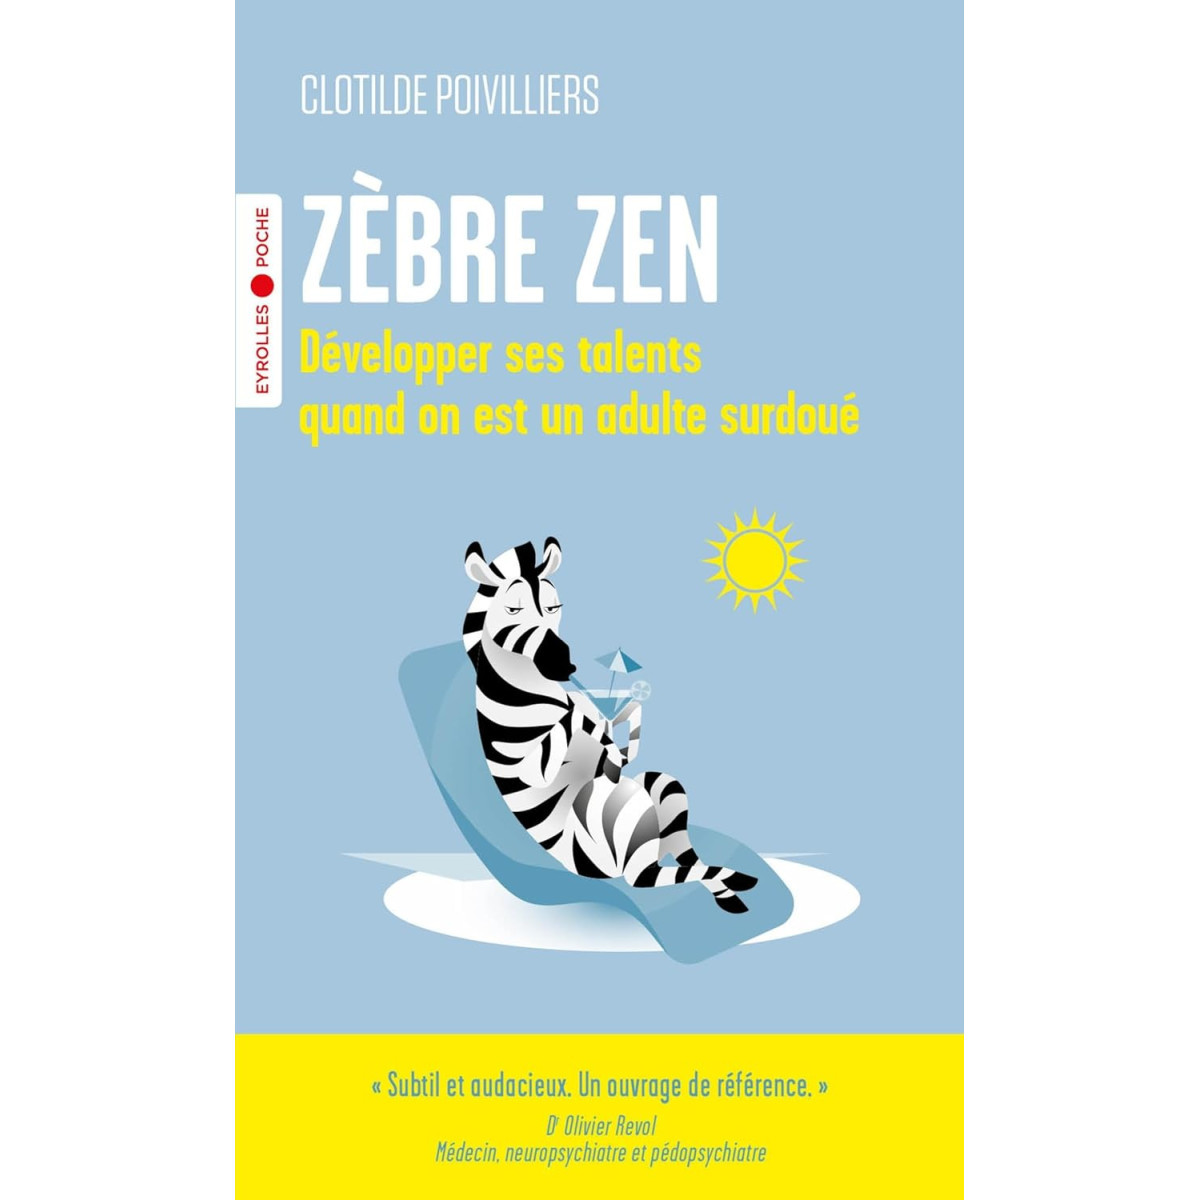 Zèbre zen: Développer ses talents quand on est un adulte surdoué